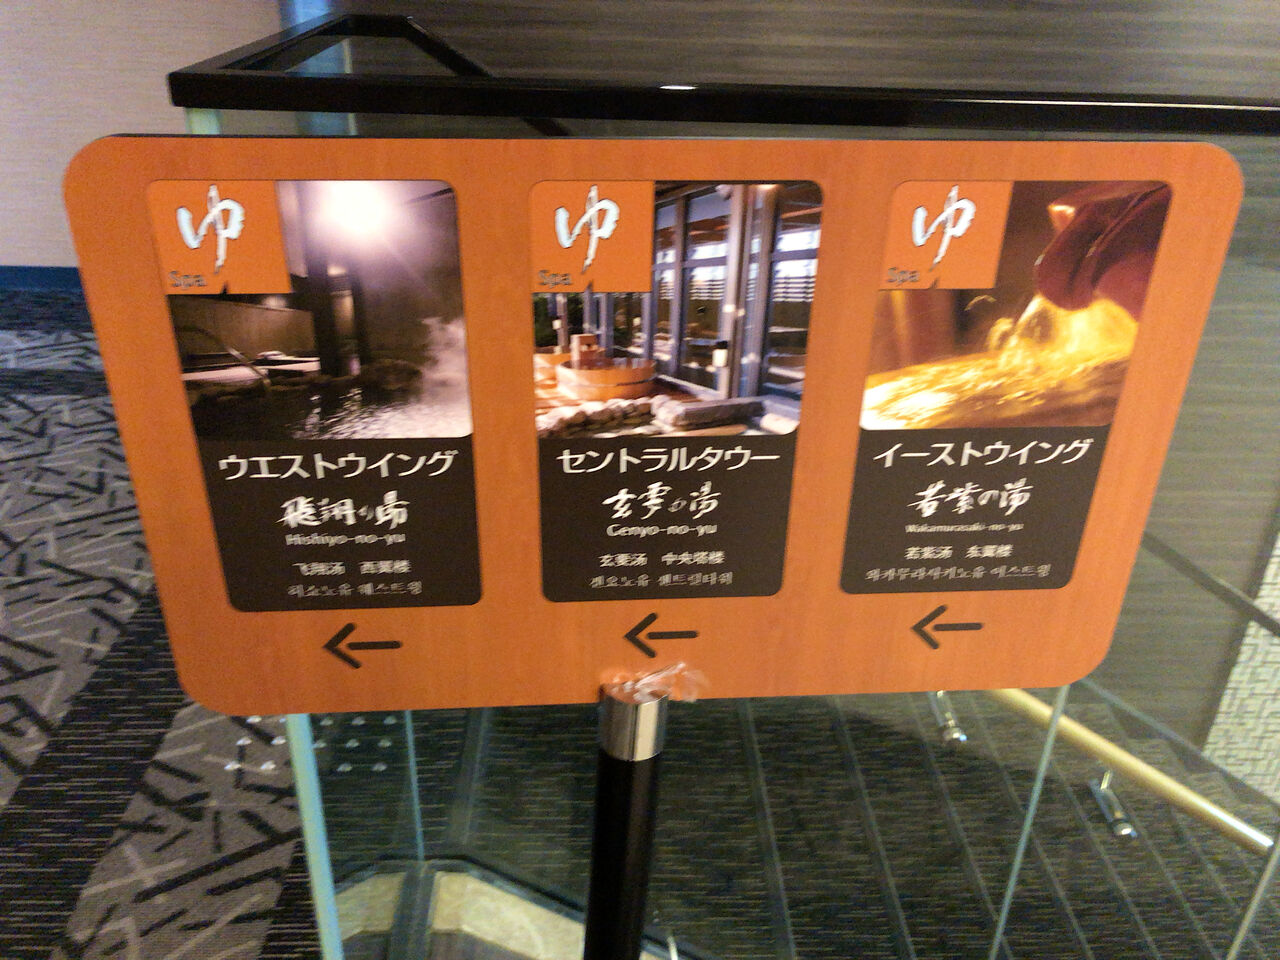 アパホテル リゾート 東京ベイ幕張 大浴場 3つの建物に所在 デイユースプラン5000円 健康ランドdeまったり